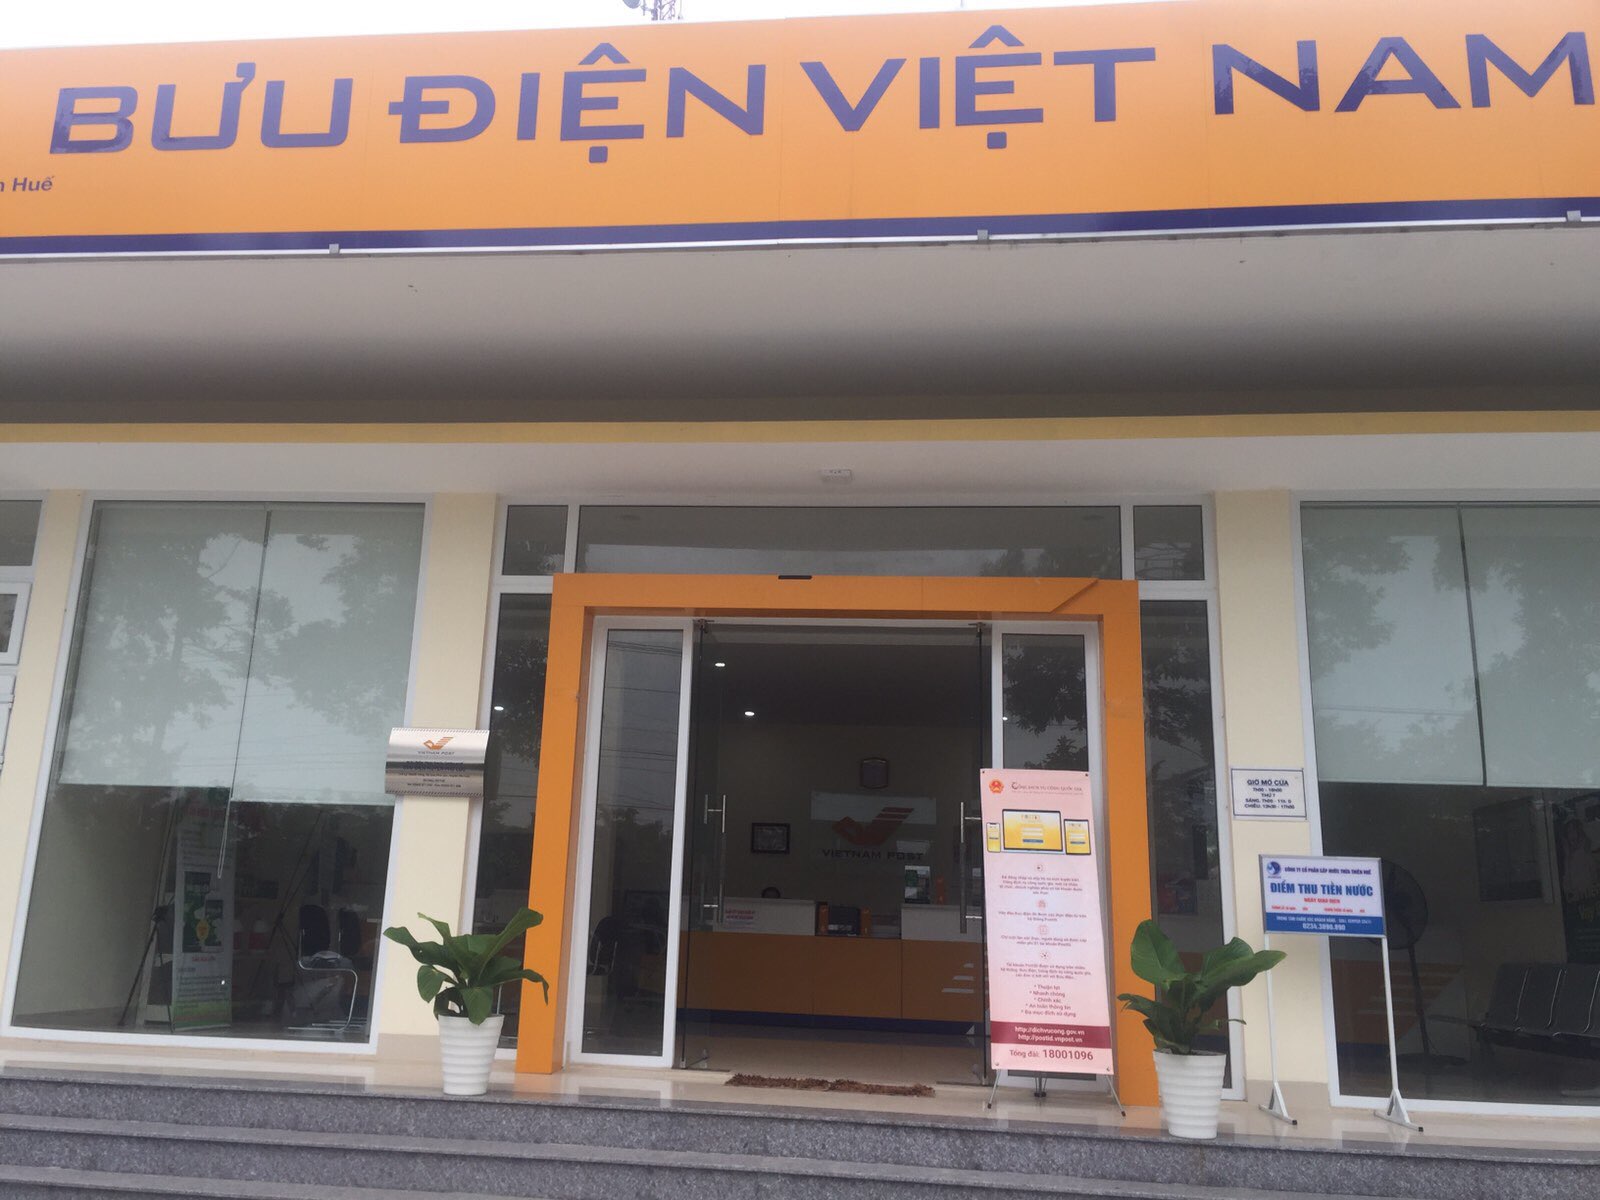 Bưu điện Việt Nam sẽ hỗ trợ người dân, doanh nghiệp, đặc biệt người dân ở địa bàn nông thôn, vùng sâu, vùng xa truy cập và nộp hồ sơ trực tuyến trên Cổng dịch vụ công quốc gia tại các bưu cục, điểm BĐVHX.